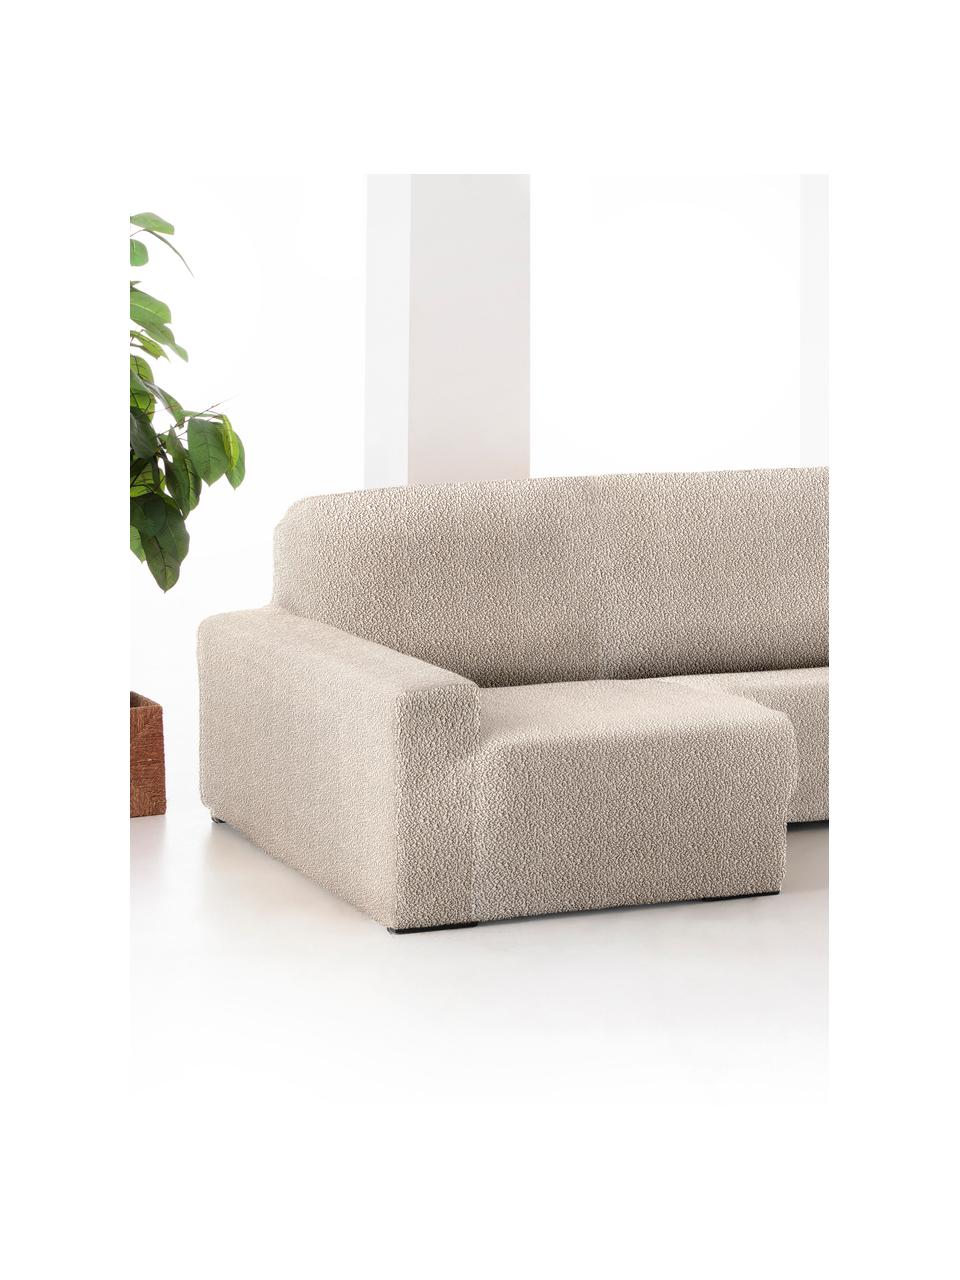 Copertura divano angolare Roc, 55% poliestere, 35% cotone, 10% elastomero, Color crema, Larg. 360 x Alt. 180 cm, chaise-longue a destra